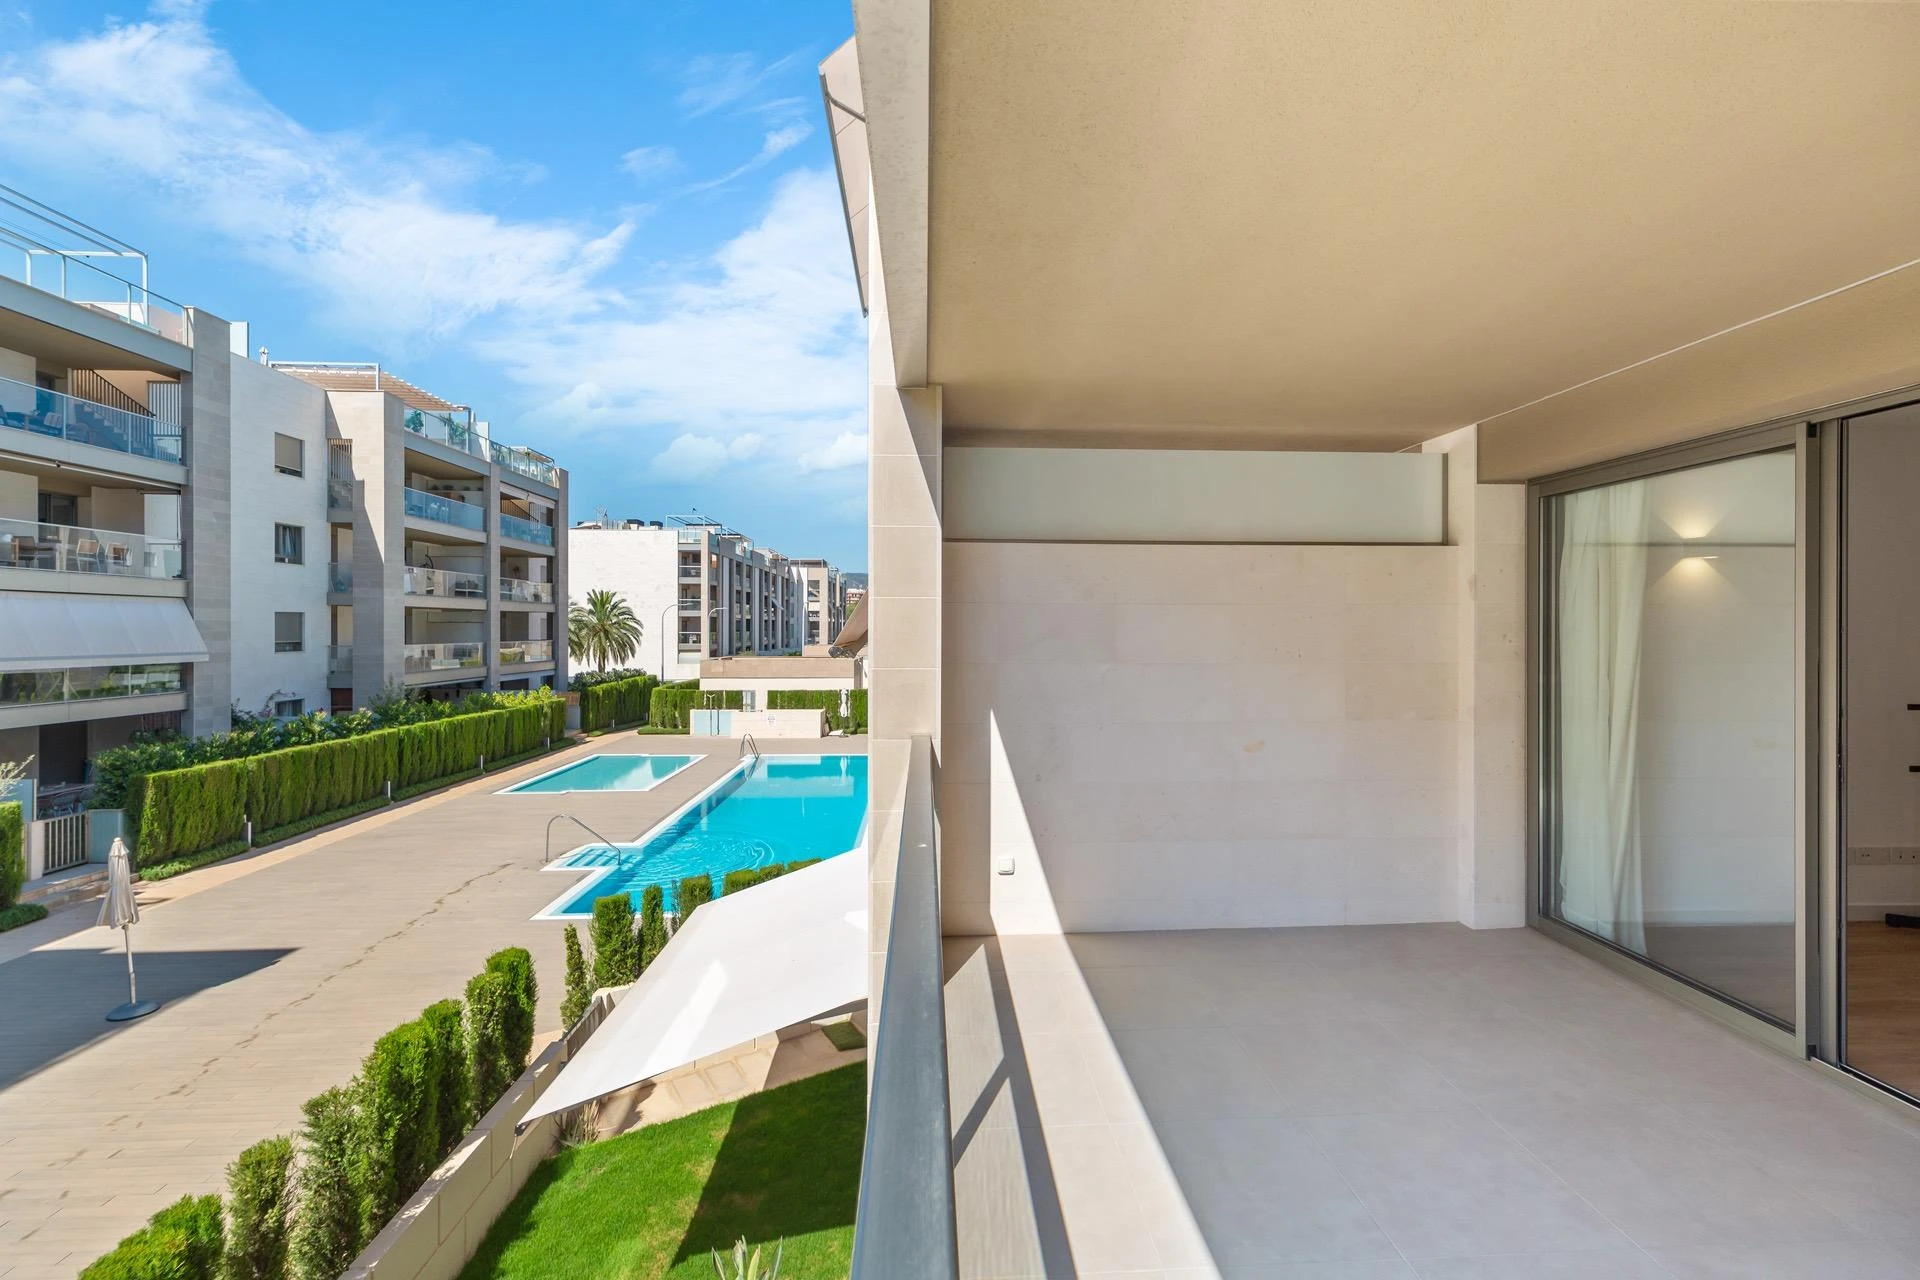 Moderna Wohnung in gepflegter Anlage mit Swimmingpools und Grünflächen in Palma